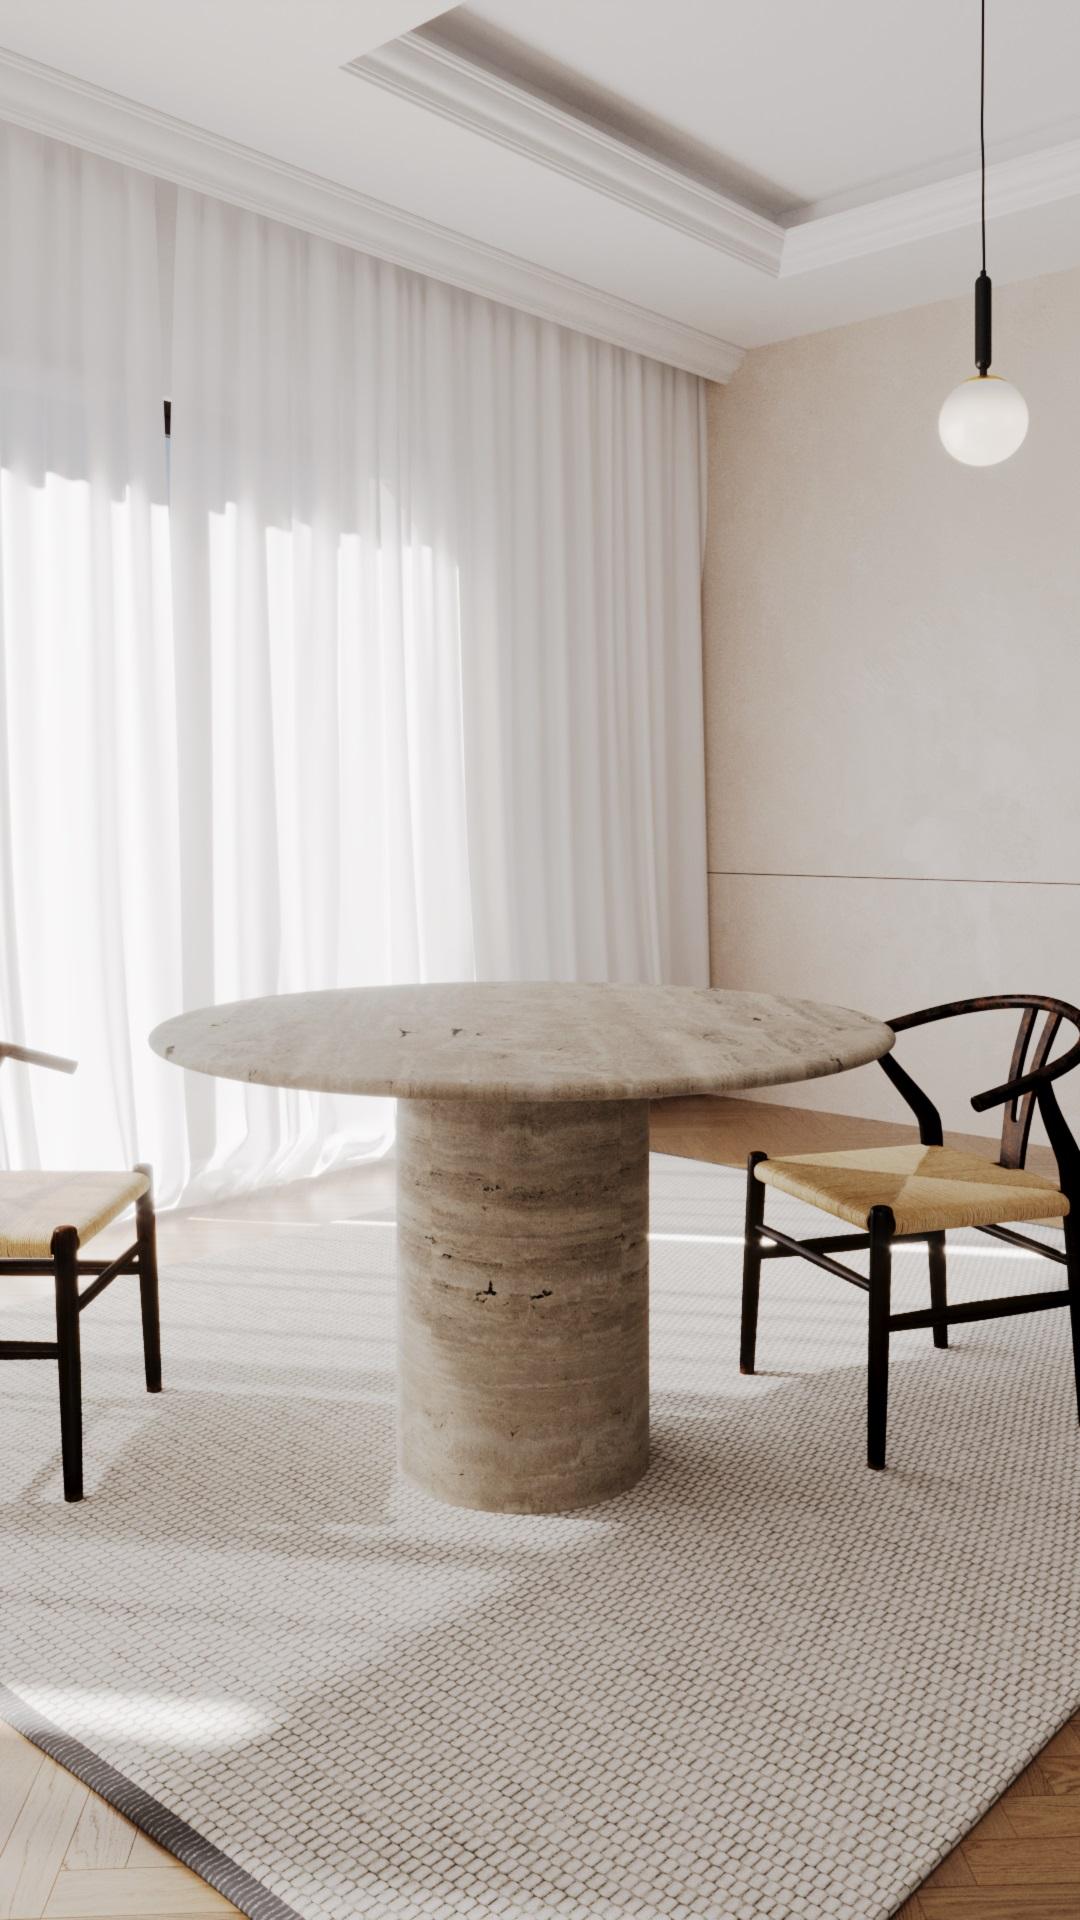 La table de salle à manger ronde s'inspire des formes organiques et fluides que l'on trouve dans la Nature. Il associe en toute transparence les meilleurs matériaux du monde pour créer des connexions d'une simplicité époustouflante. Qu'il s'agisse